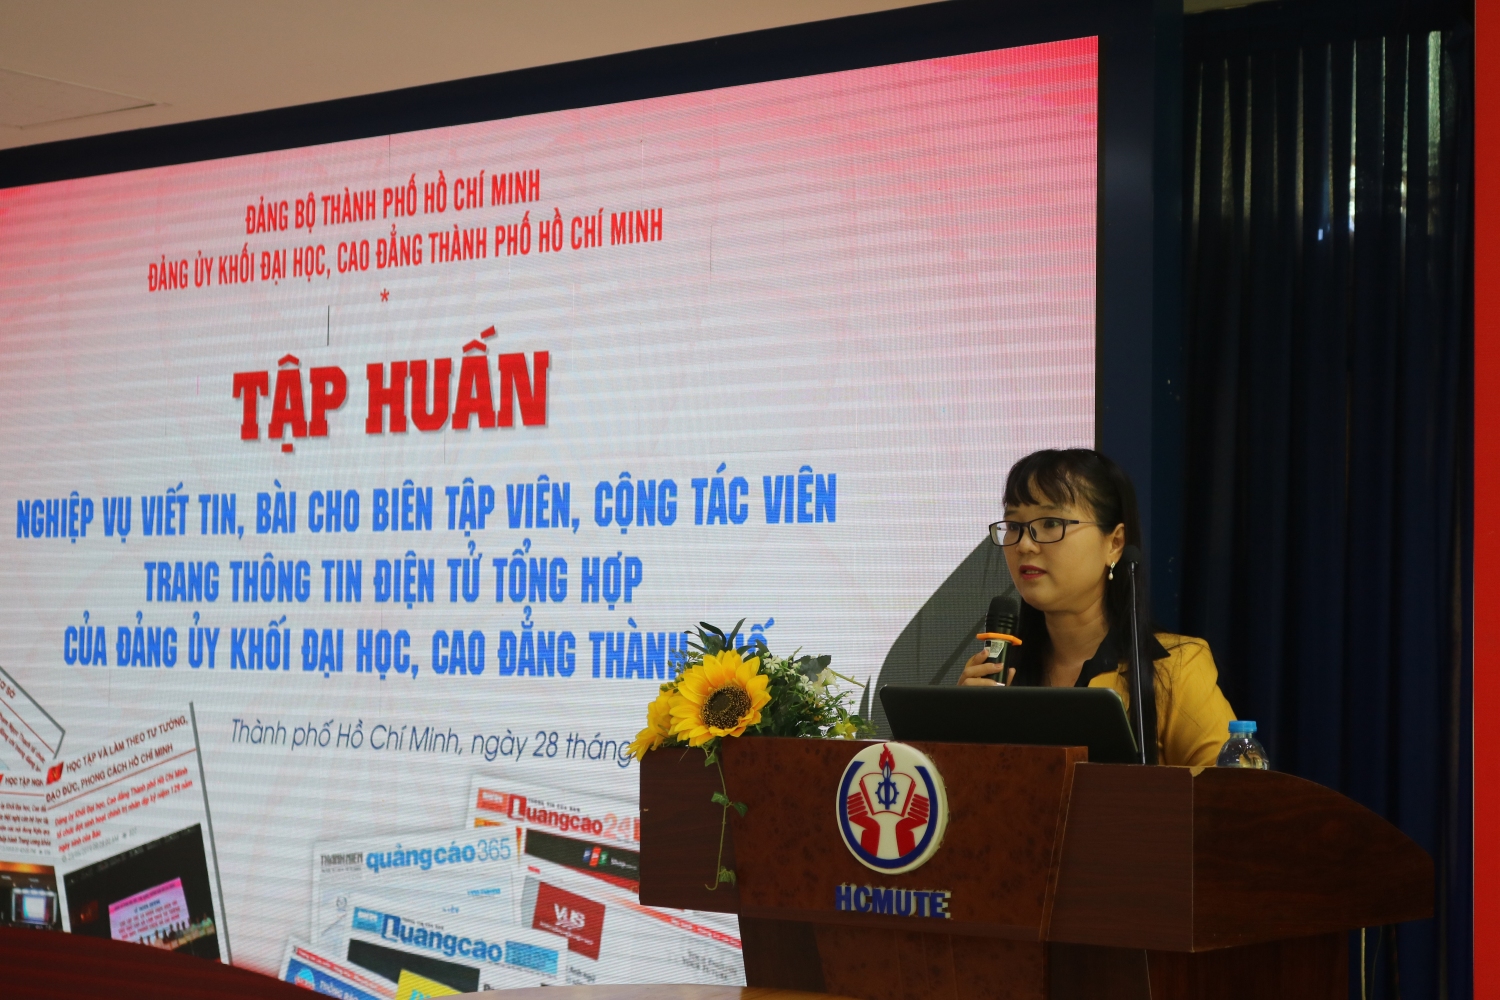 4.	Đồng chí Đặng Thùy Khánh Vân giới thiệu Trang tin điện tử của Đảng ủy Khối Đại học, Cao đẳng Thành phố